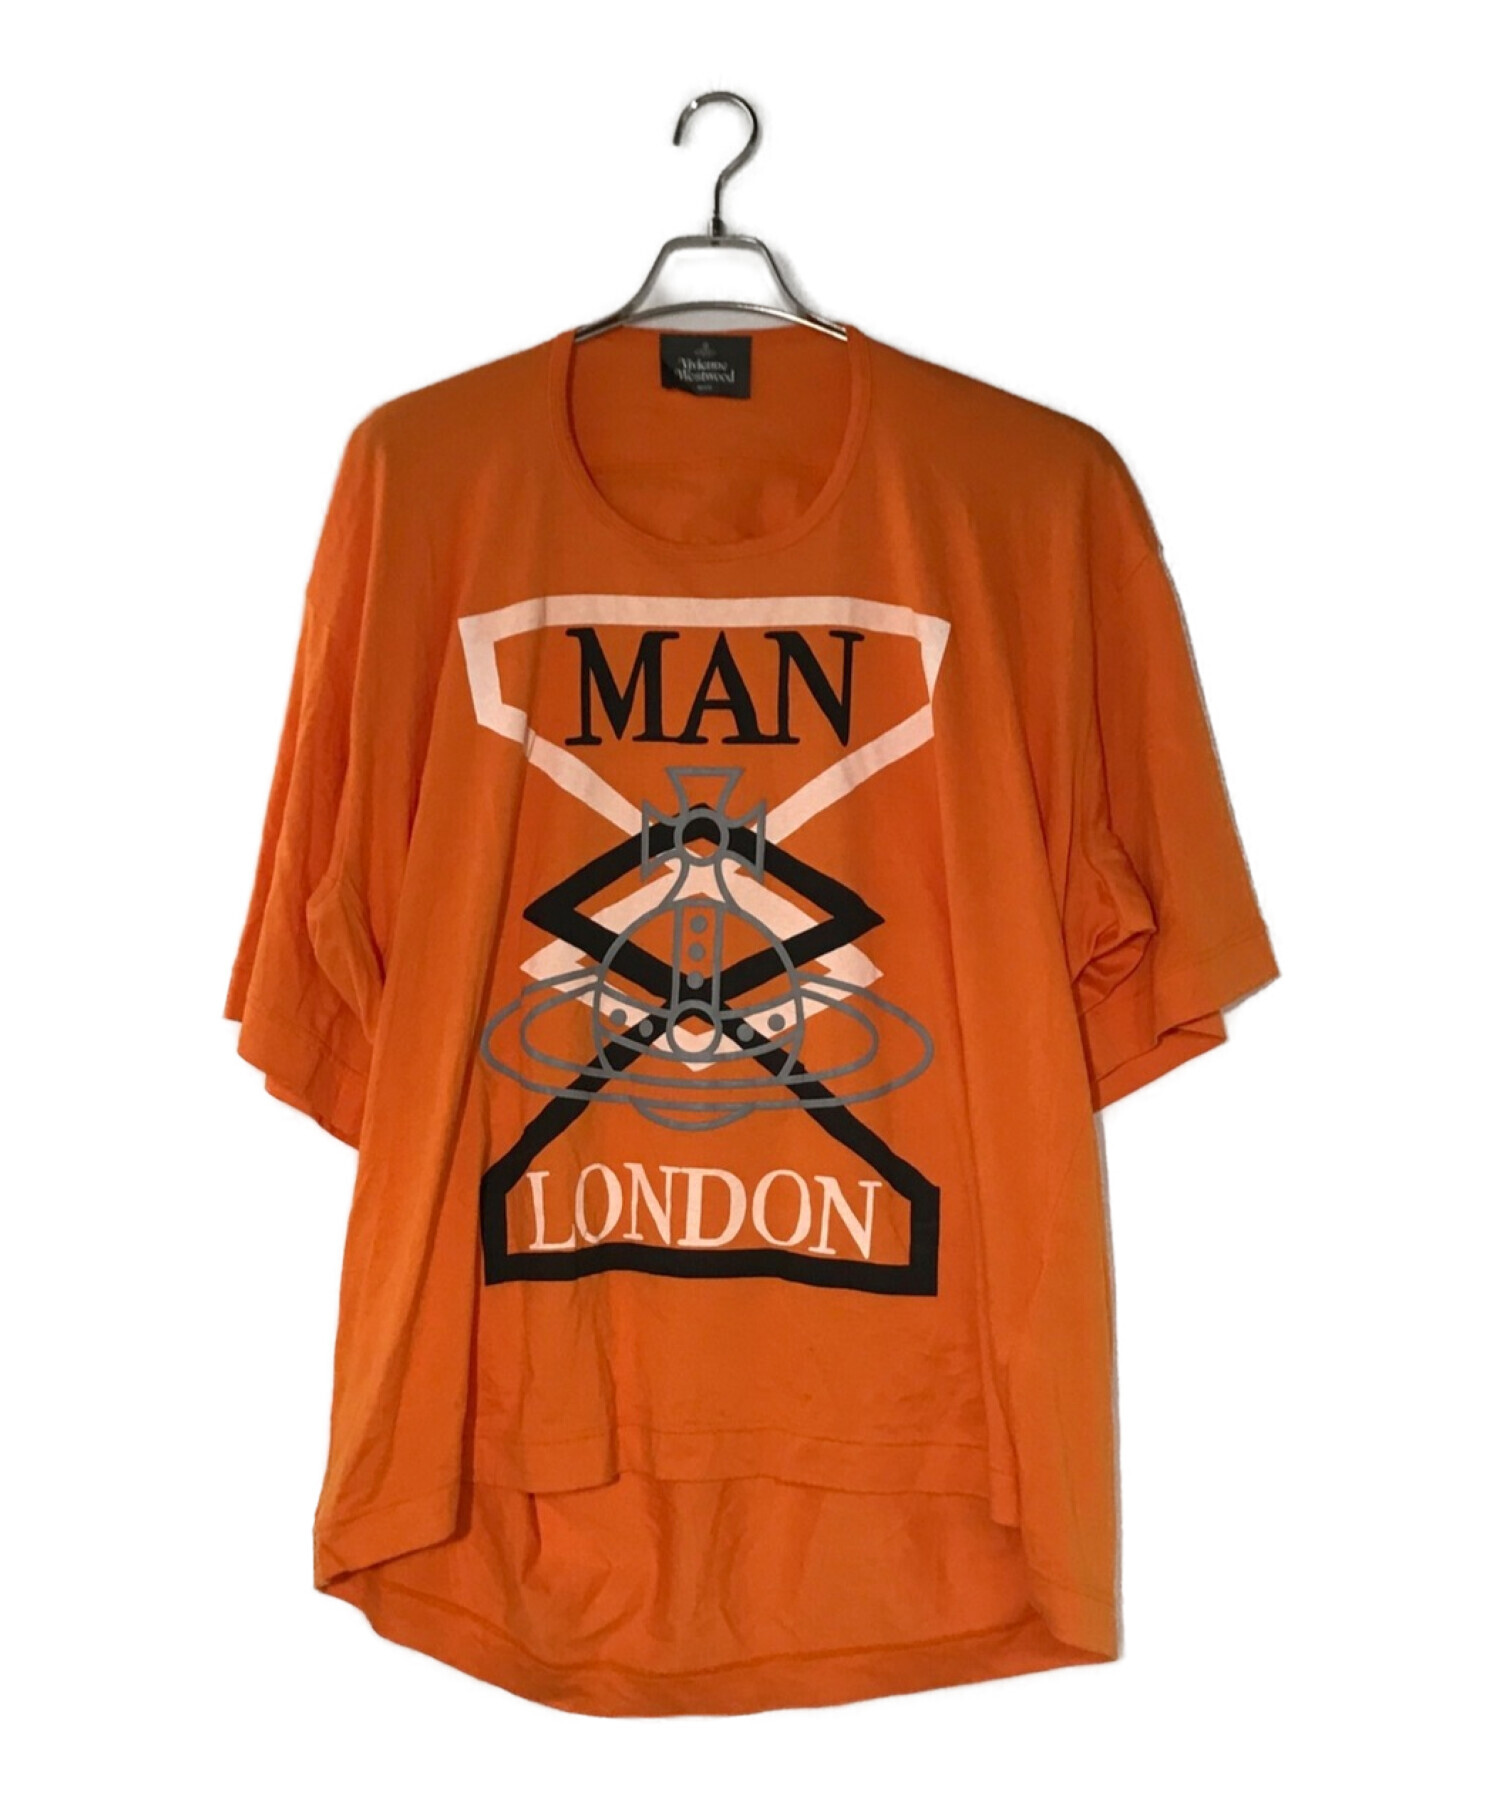 Vivienne Westwood man (ヴィヴィアン ウェストウッド マン) “FRATERNITY ORB” ビッグTシャツ オレンジ  サイズ:F